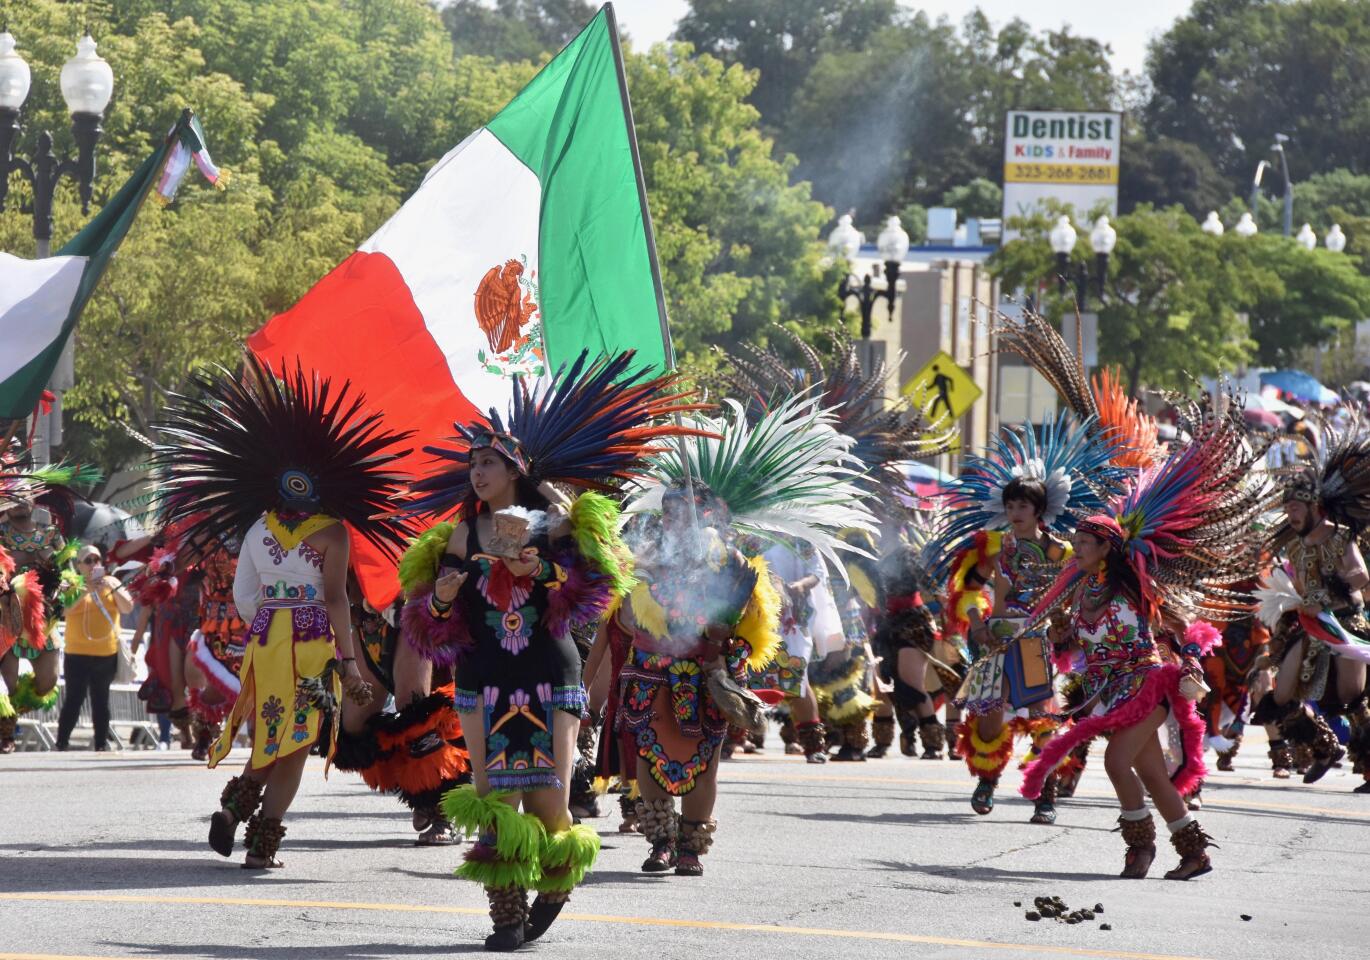 Bailarines aztecas danzan este domingo durante un desfile en Los Ángeles, California. Mexicanos de la ciudad estadounidense dicen que a pesar de que "la conquista" de América Latina por españoles fue ruda, ellos prefieren resaltar "lo positivo" de la unión "de dos mundos" en la edición 73 del desfile de Independencia de México.